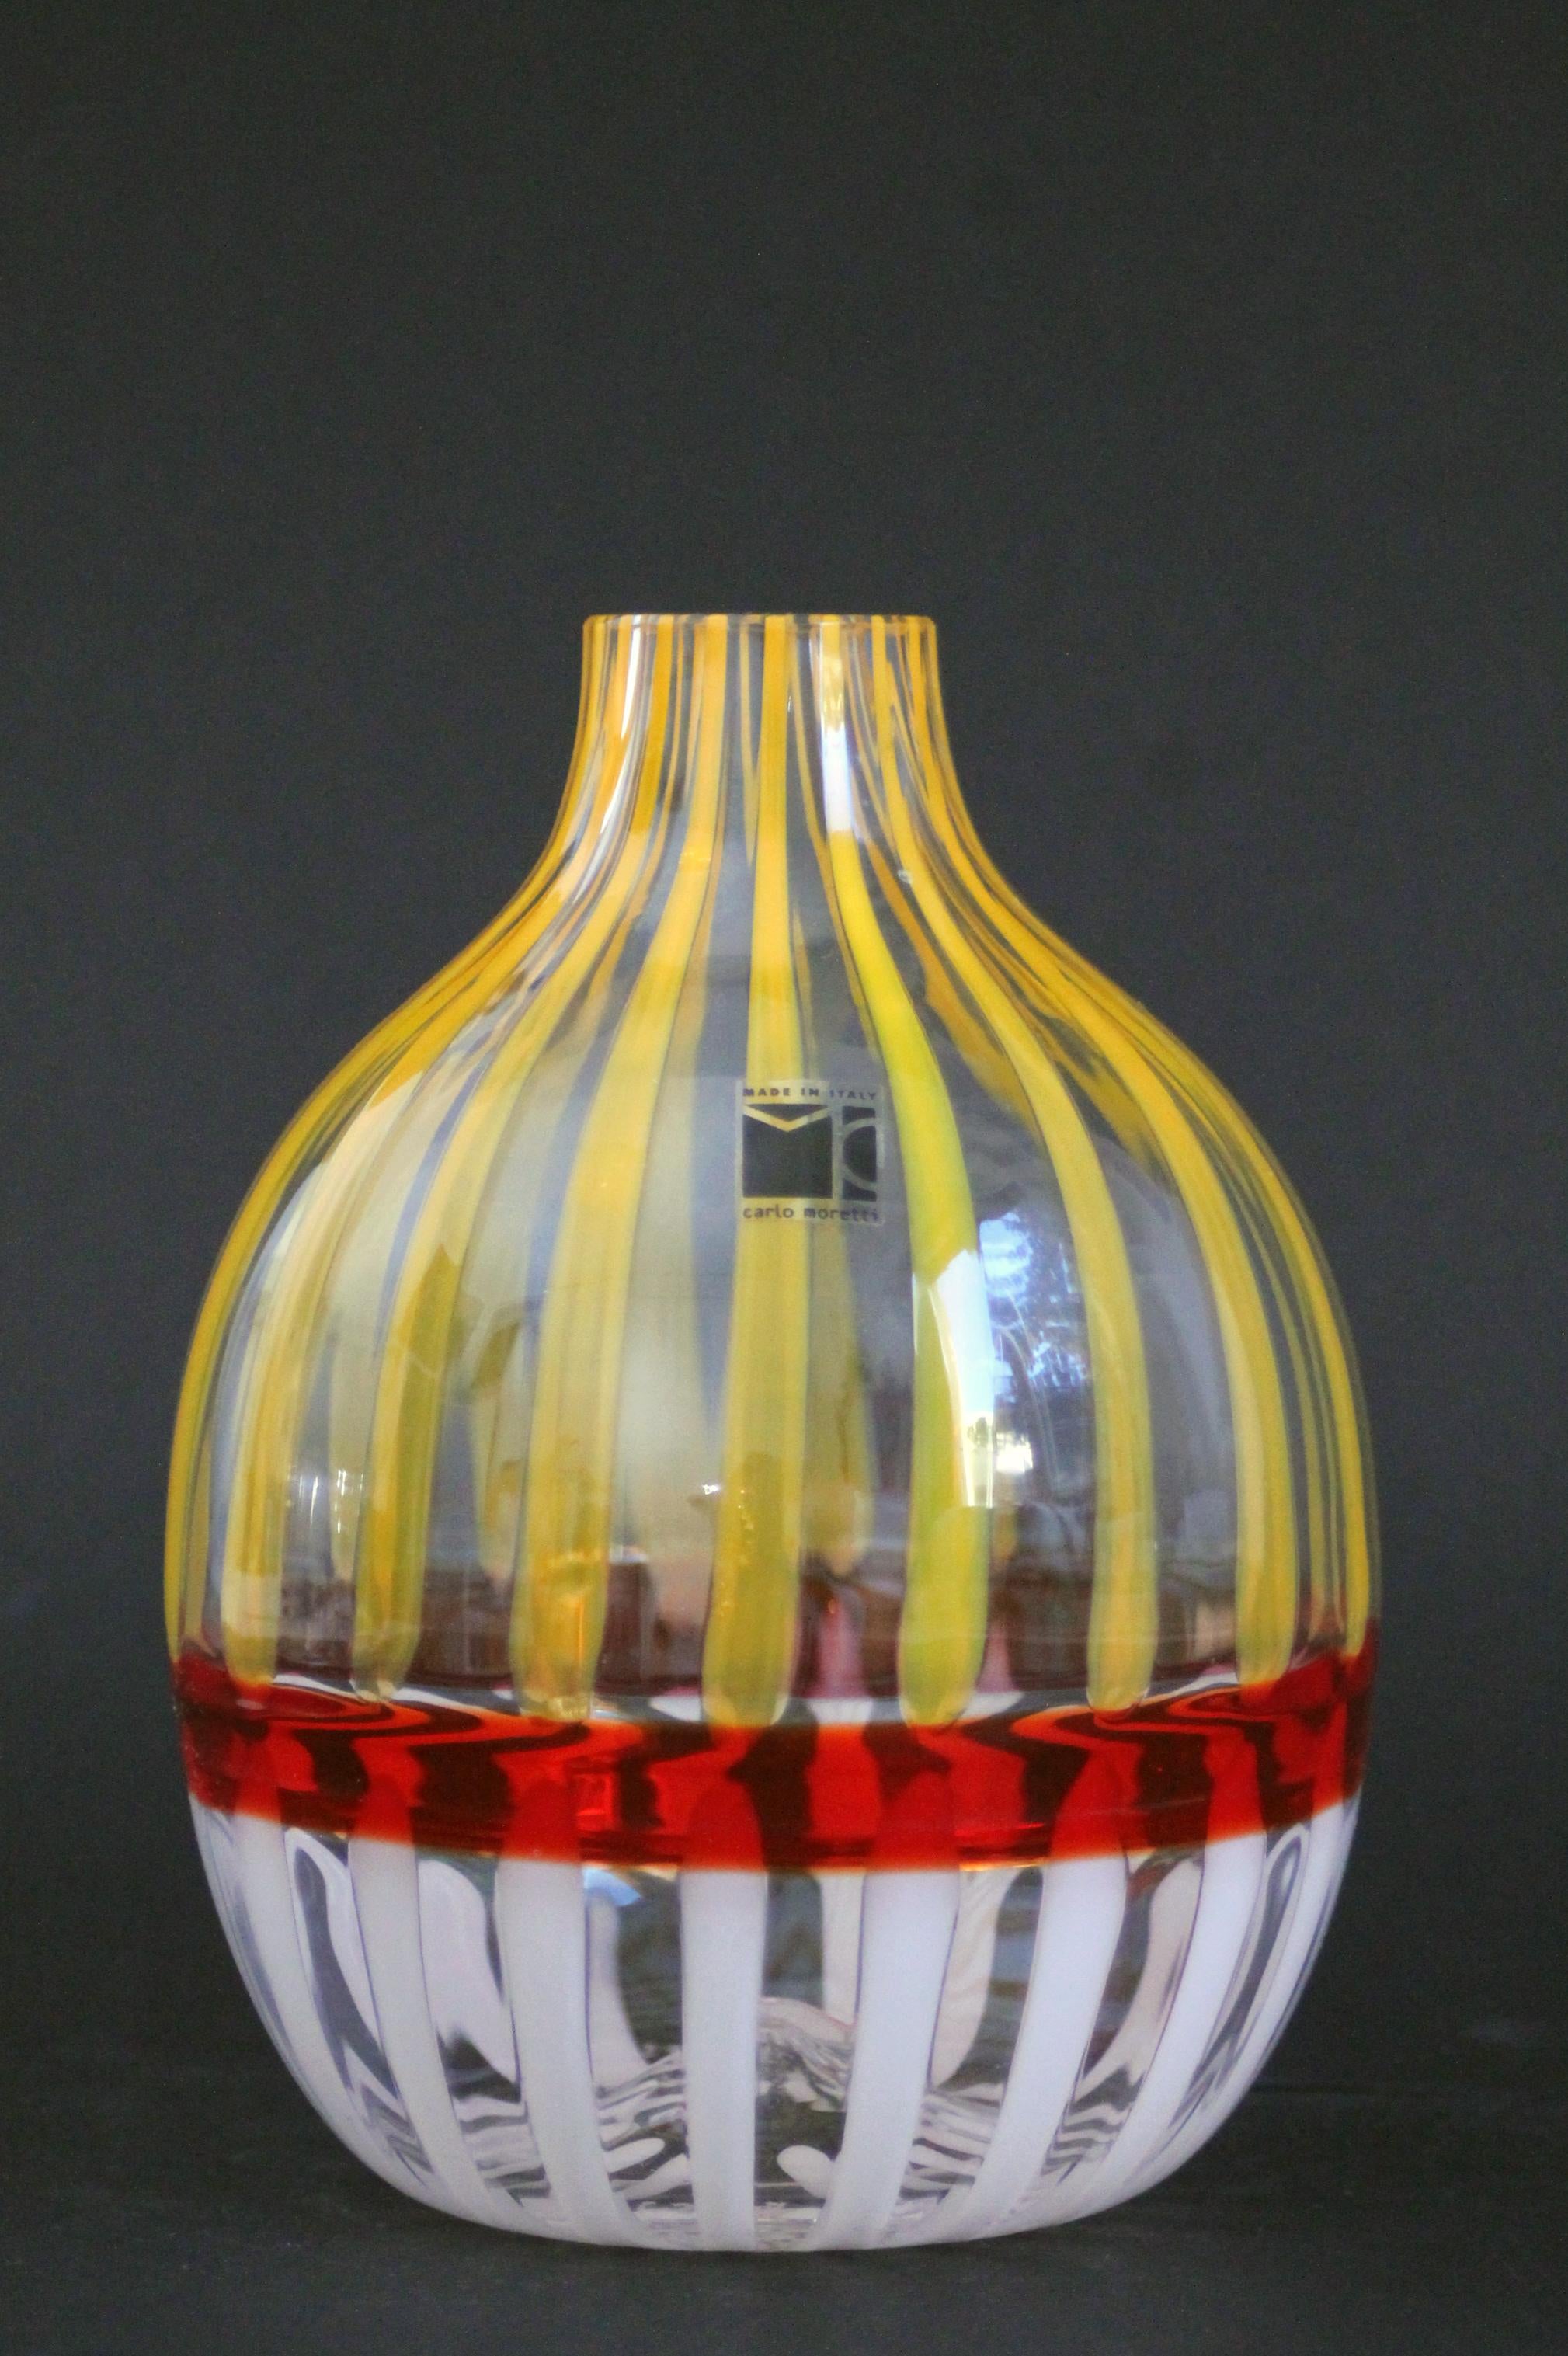 Contemporary Carlo Moretti  Murano glass vase (17x13x13cm)  Mid-century modern retro decor! For Sale